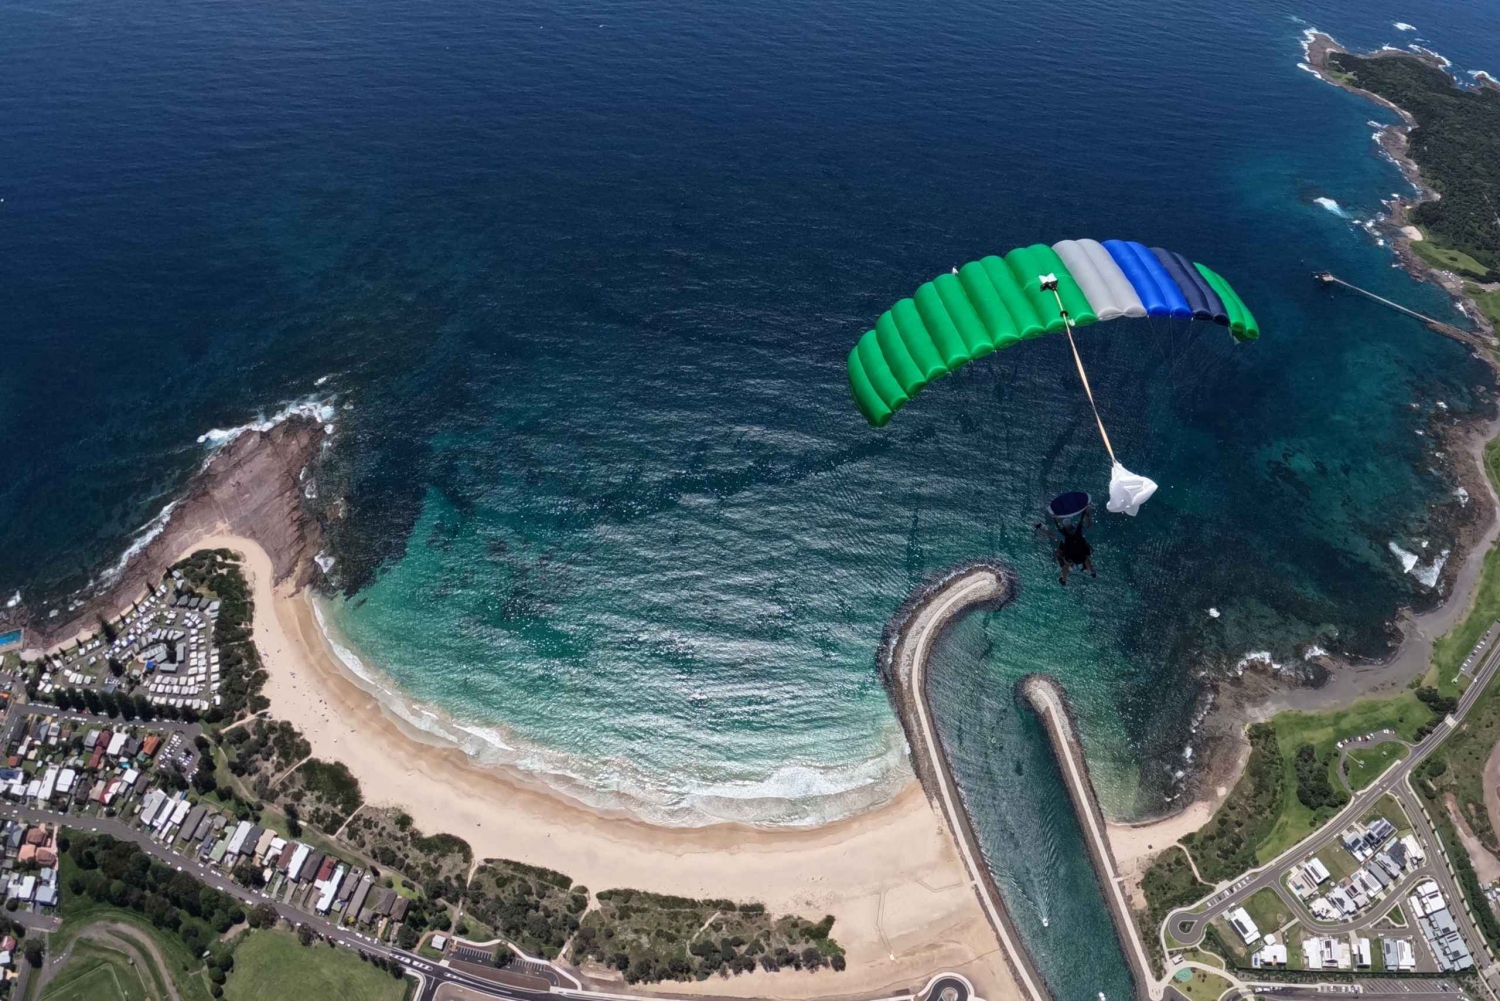 Sydney, Shellharbour: Fallskjermhopp med landing på stranden